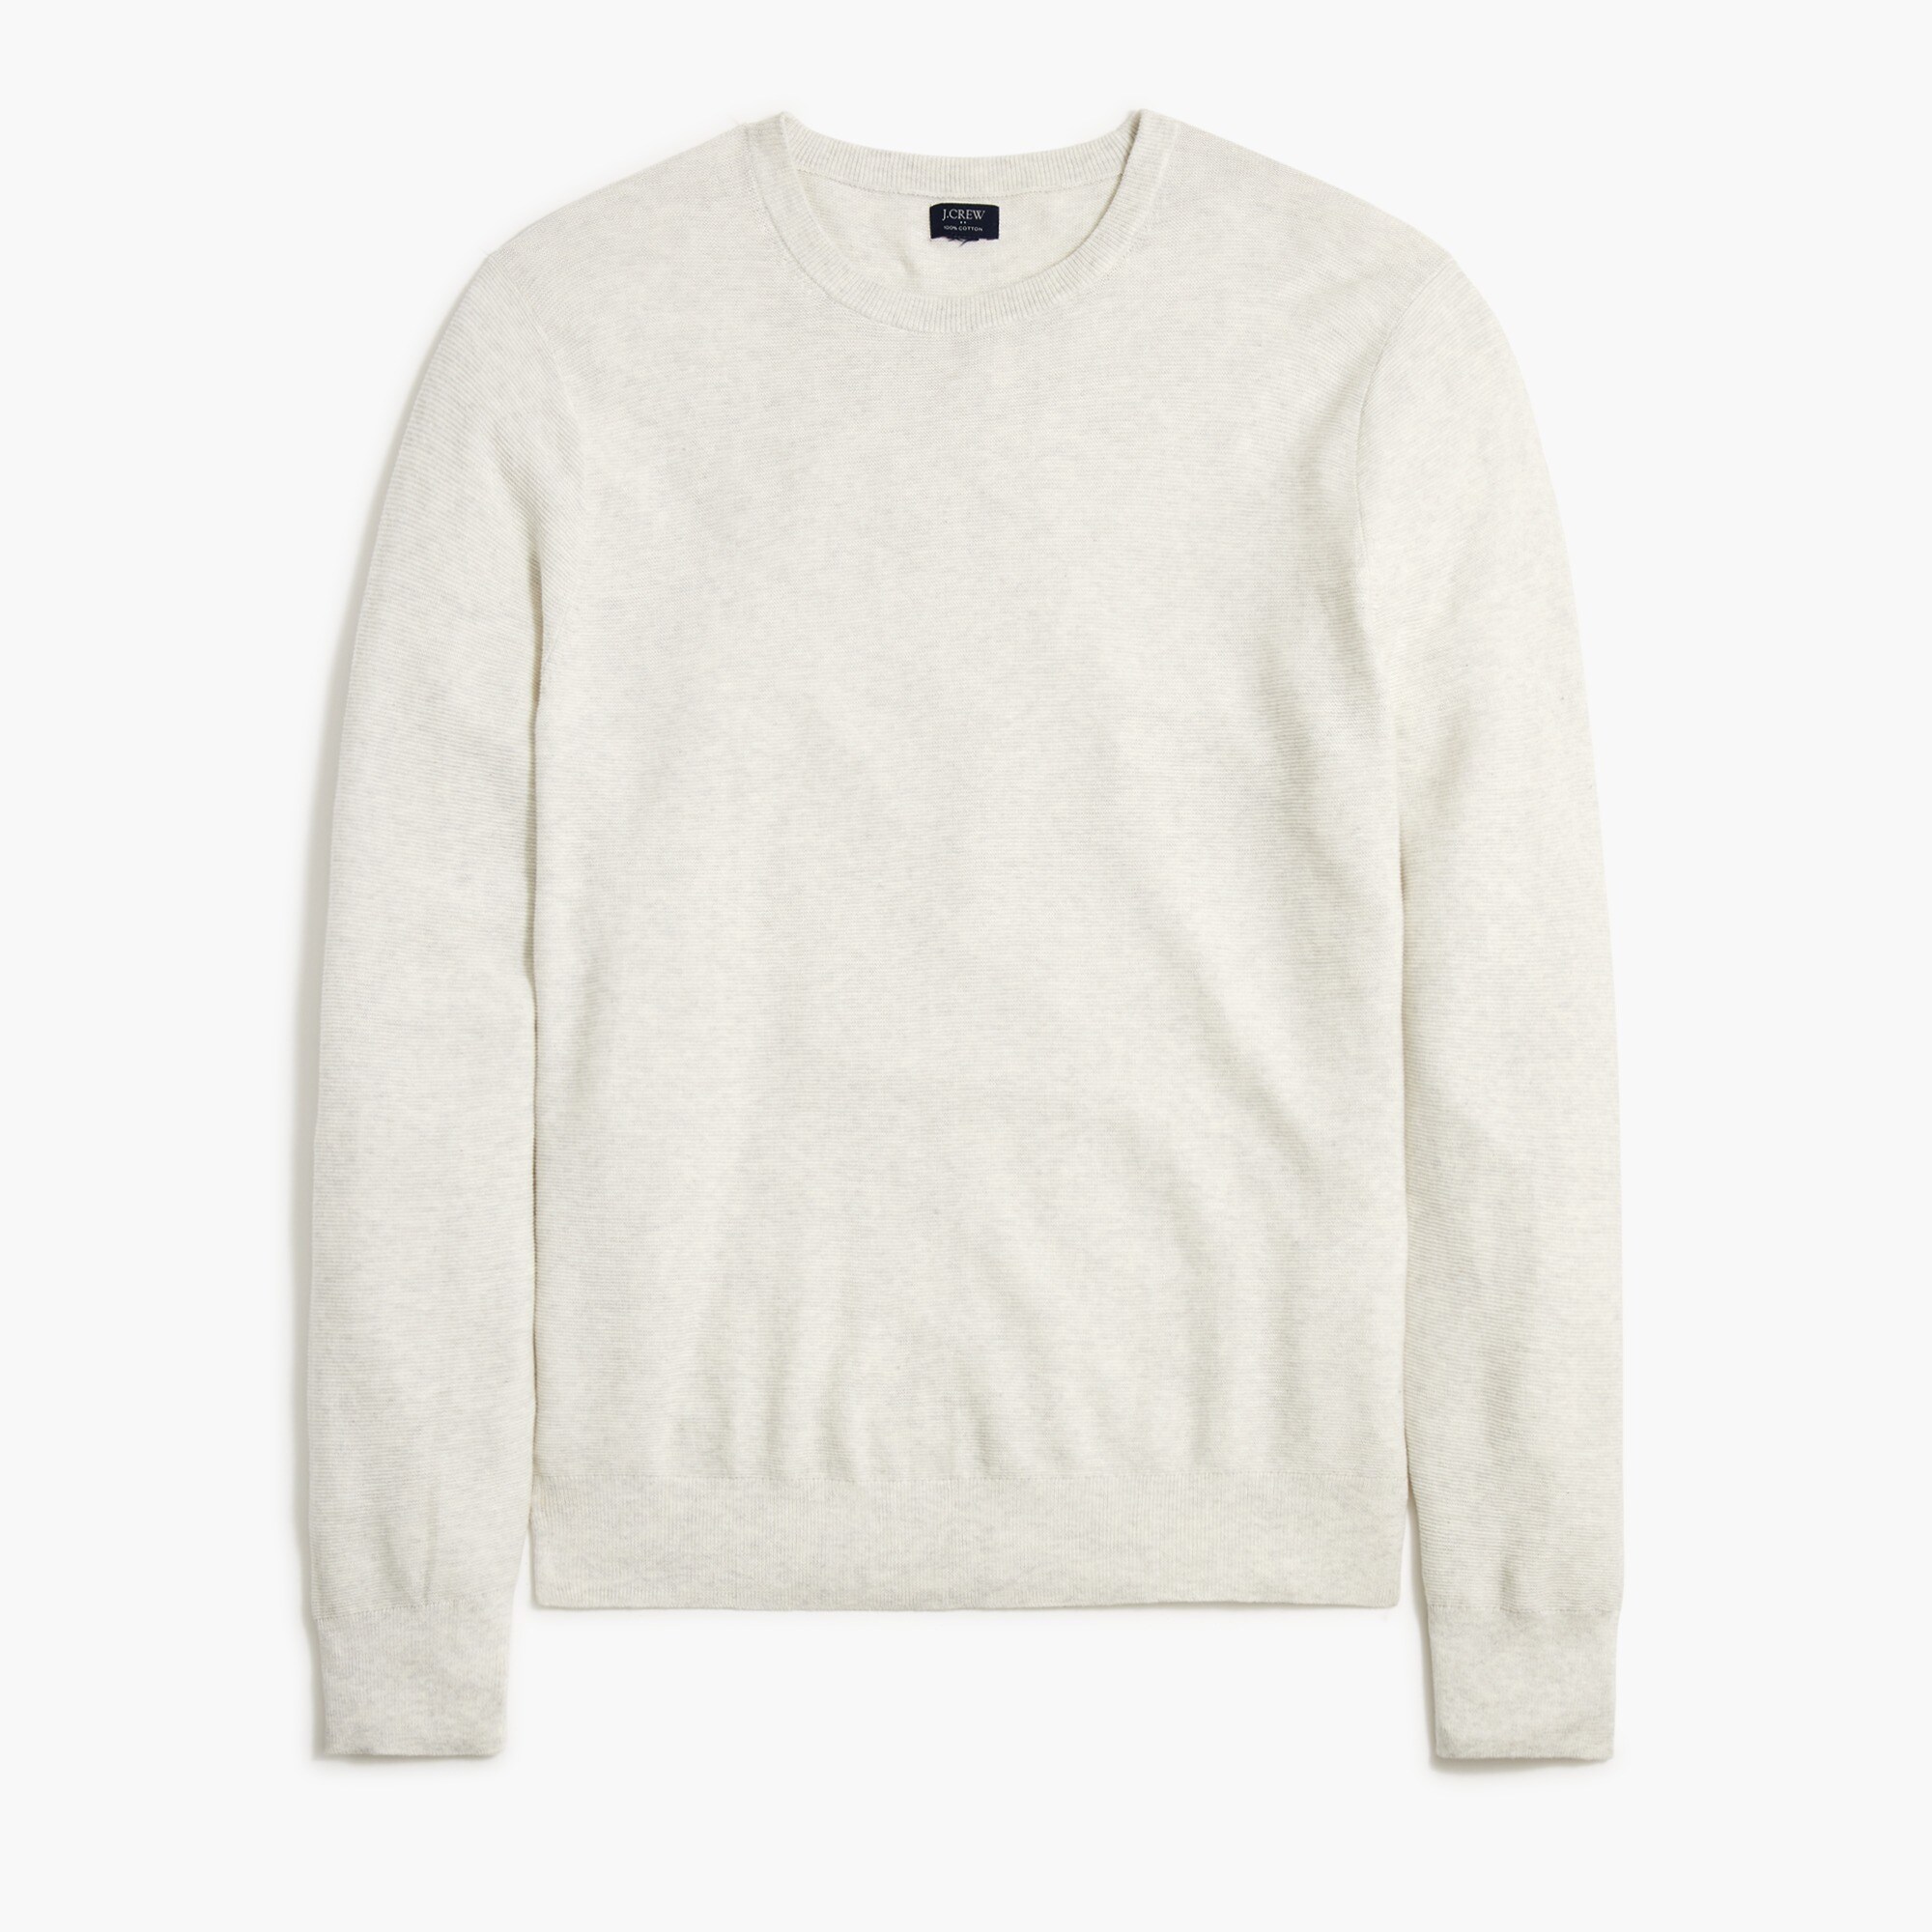  Cotton garter-stitch crewneck sweater